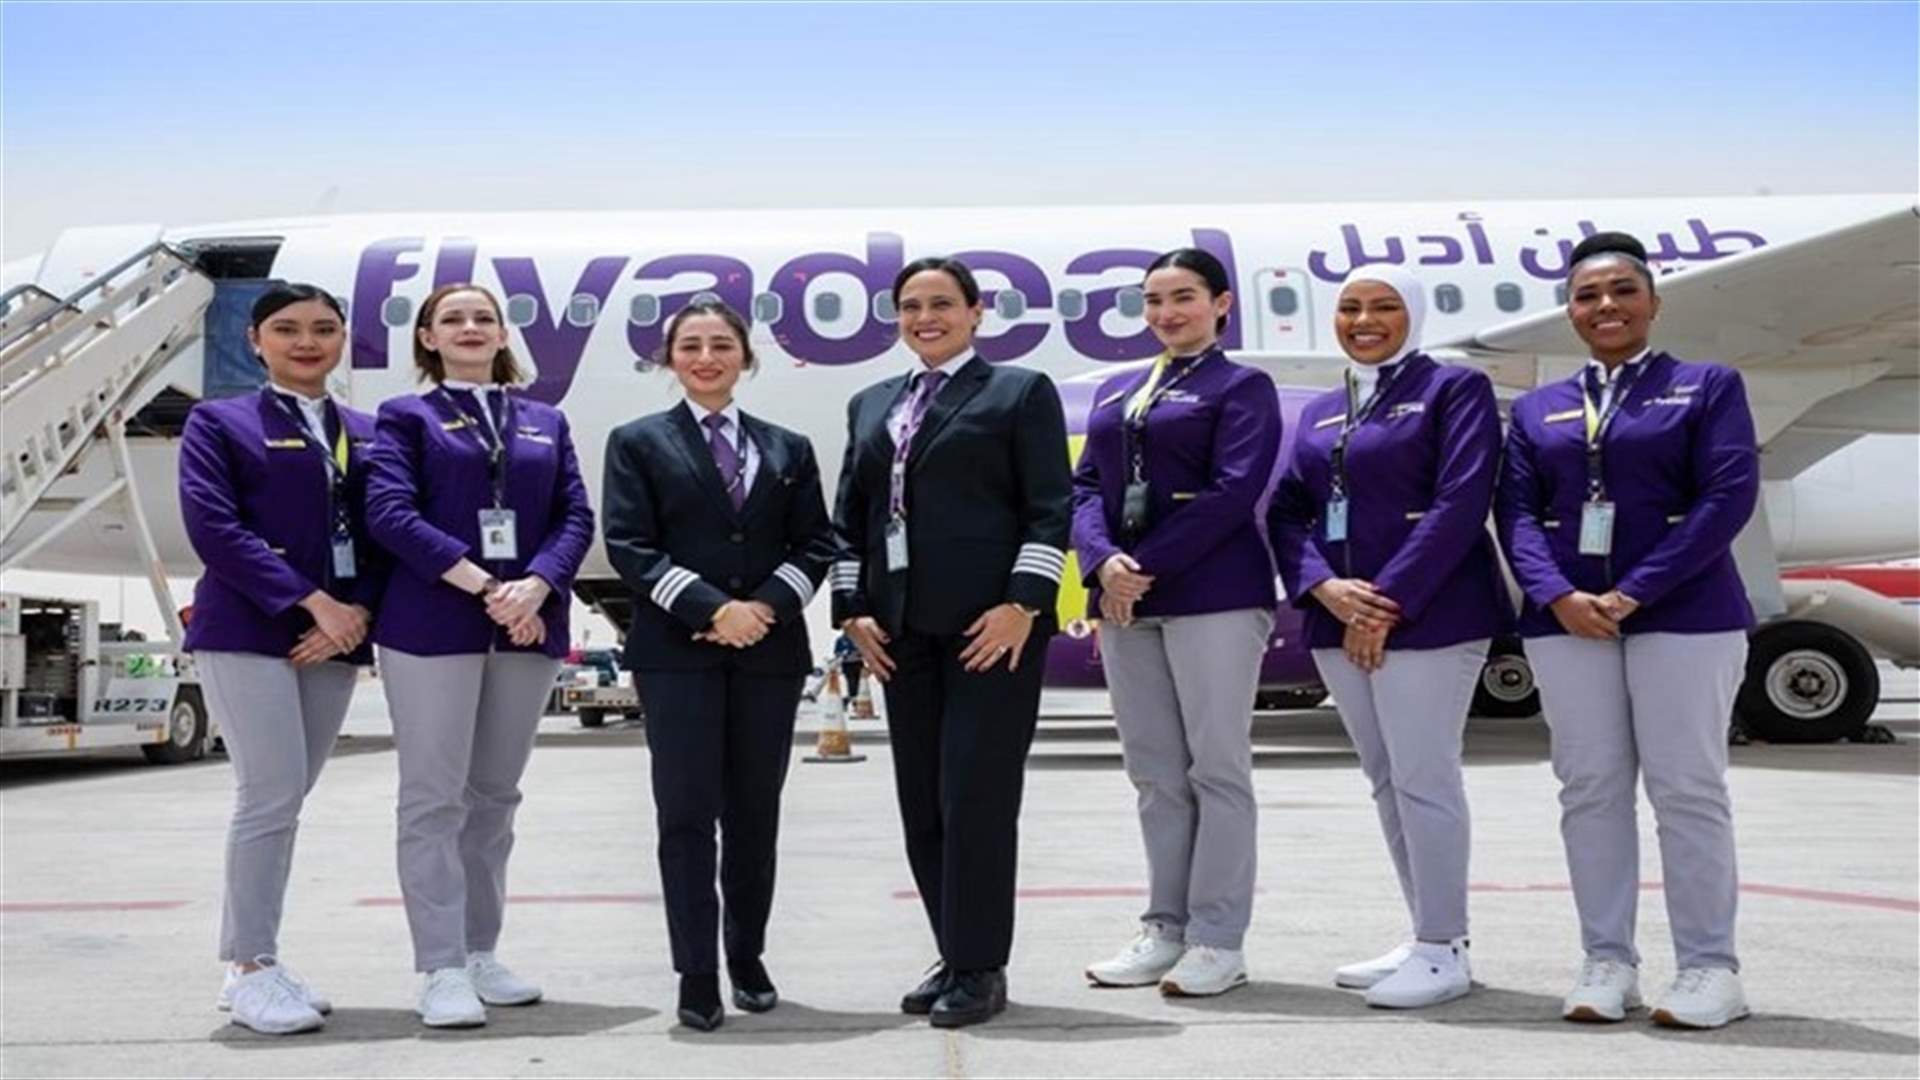 أول رحلة داخلية لشركة طيران سعودية بطاقم من النساء